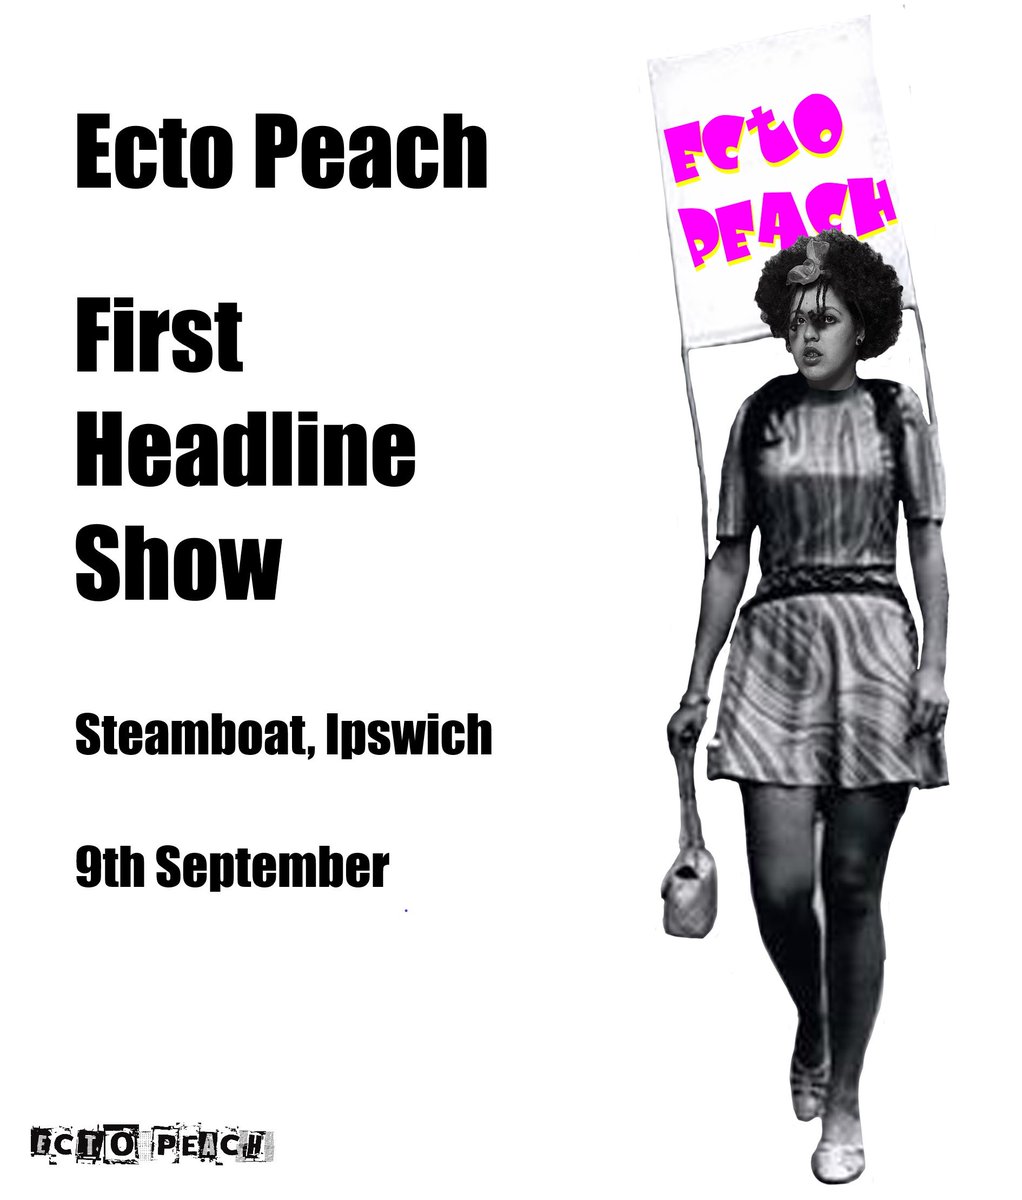 #MiddleAgedAngst #upthepeach #postpunk #LoveToKane #grunge #headline @SteamboatTavern #september #Ipswich